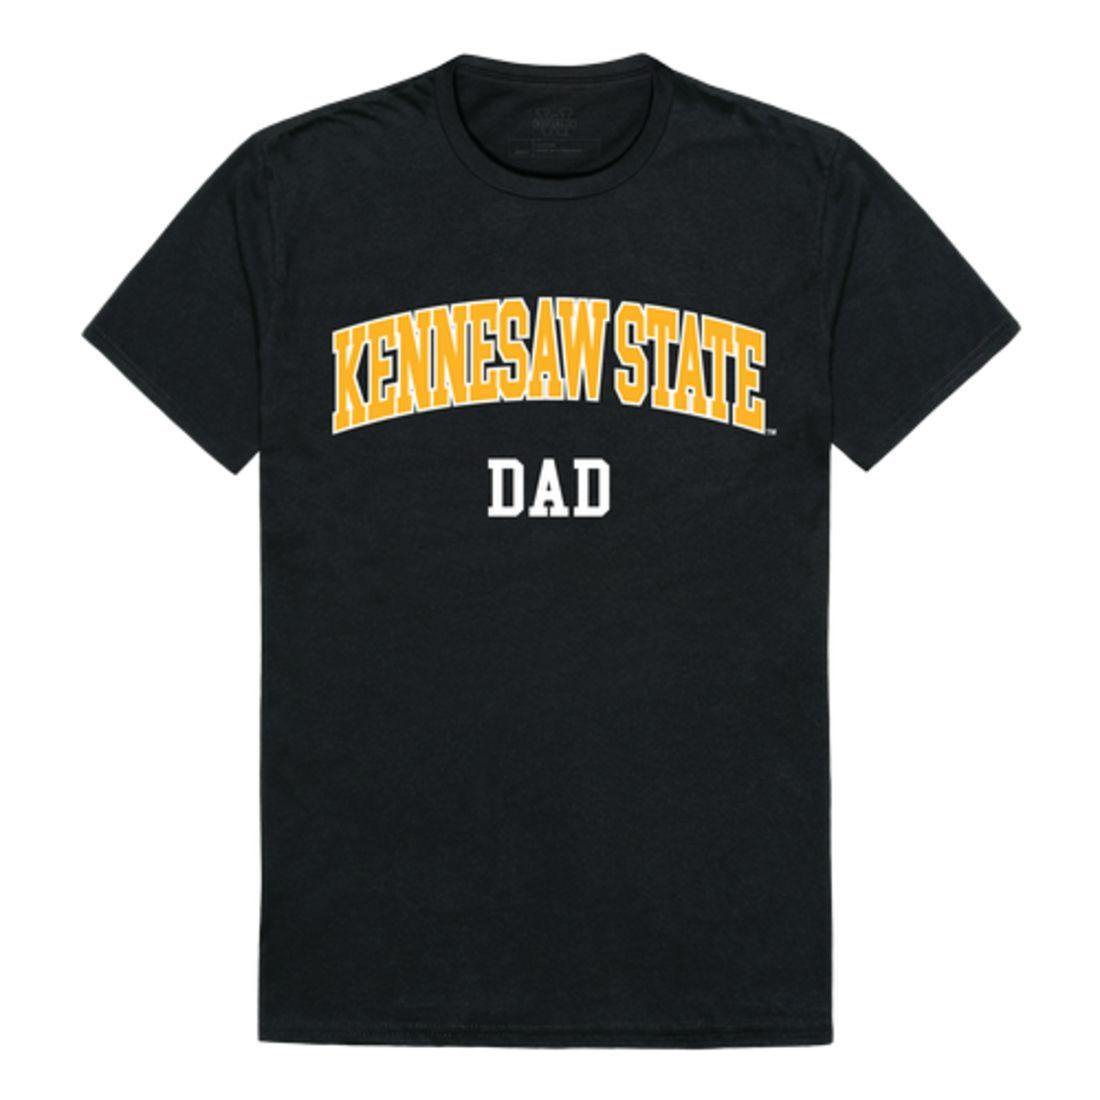 KSU Kennesaw State University Owls College Dad T-Shirt-Campus-Wardrobe